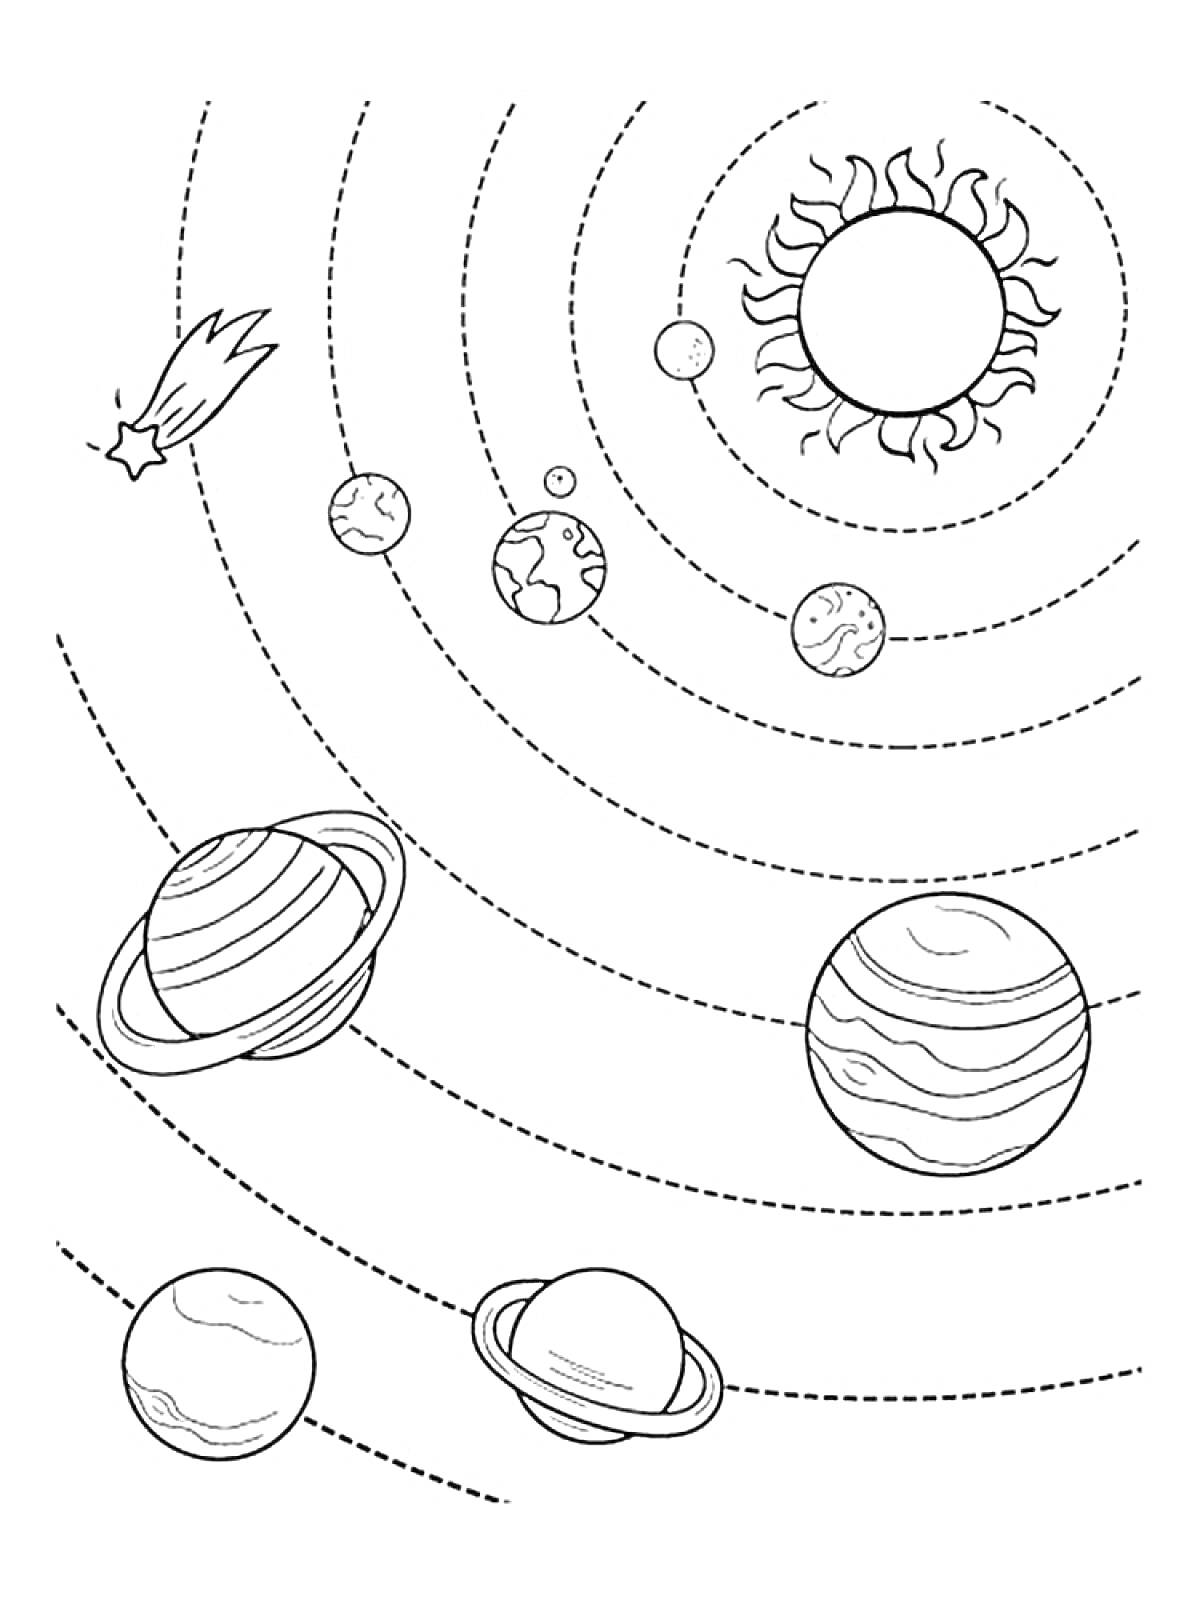 Раскраска Солнечная система с изображениями Солнца, планет и кометы